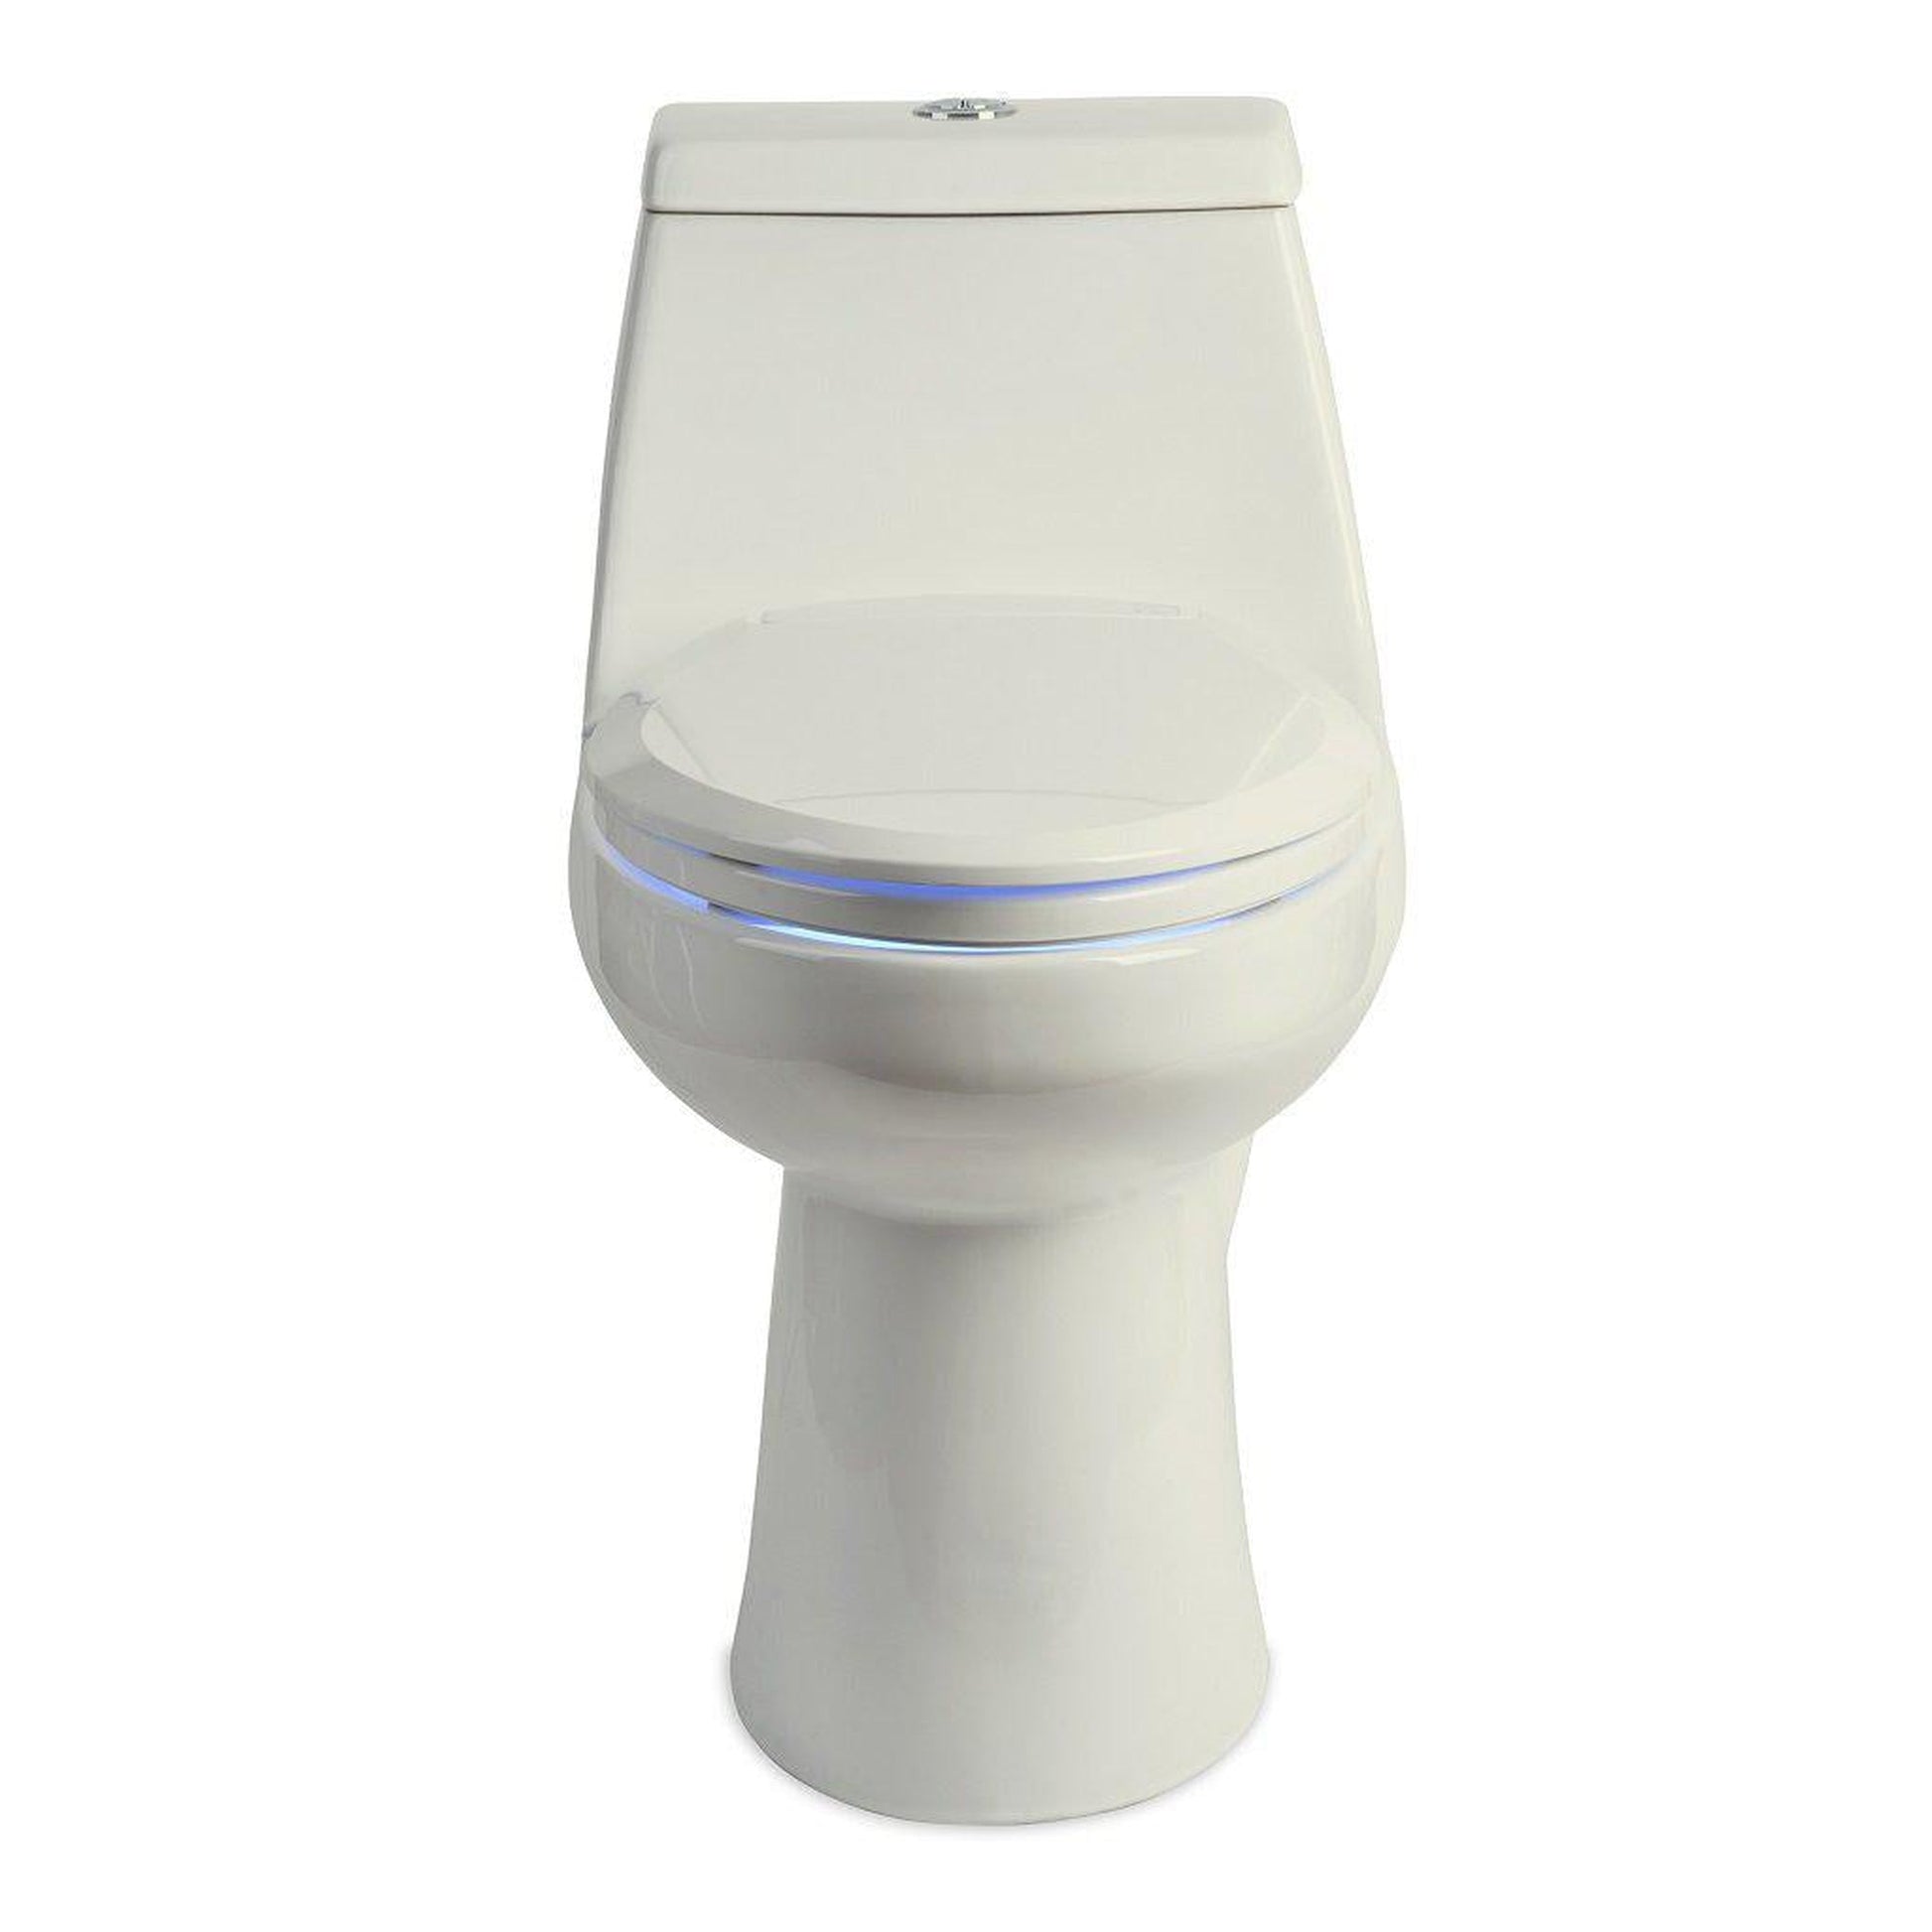 Brondell L60 LumaWarm Heated Nightlight Round Toilet Seat Biscuit